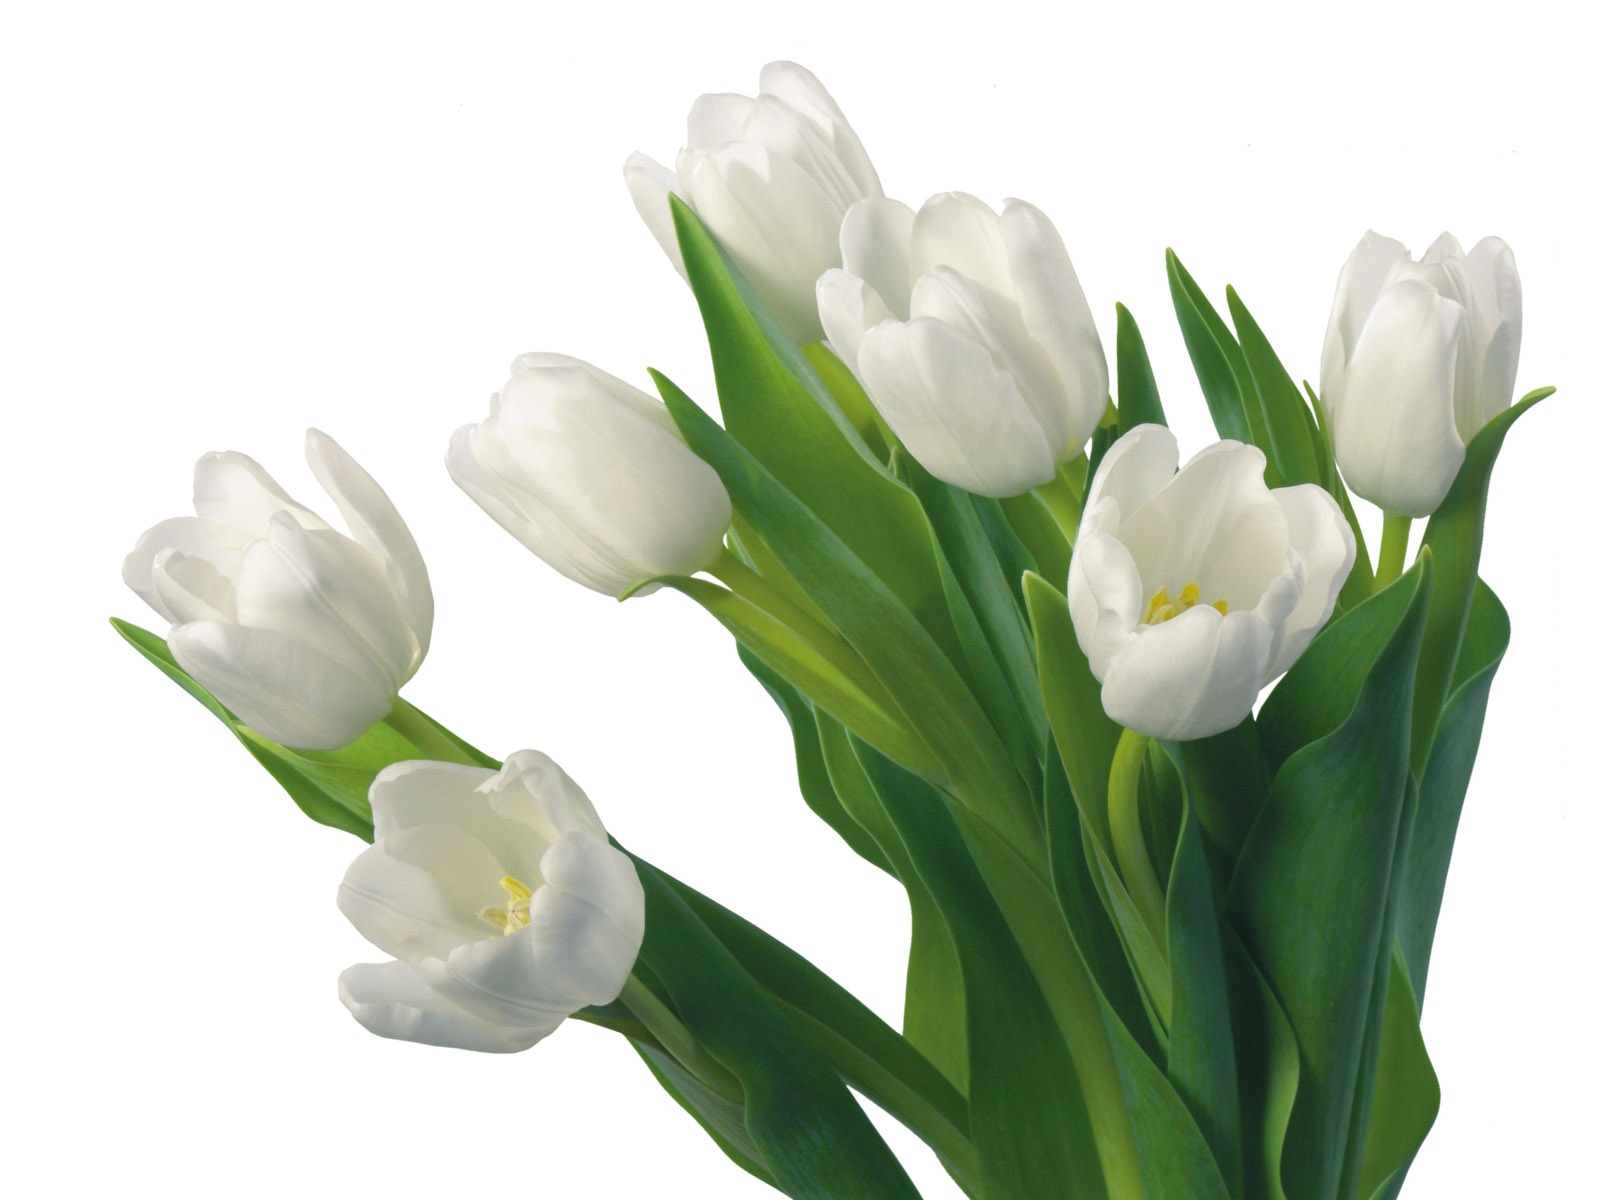 눈같이 흰 꽃 벽지 #12 - 1600x1200